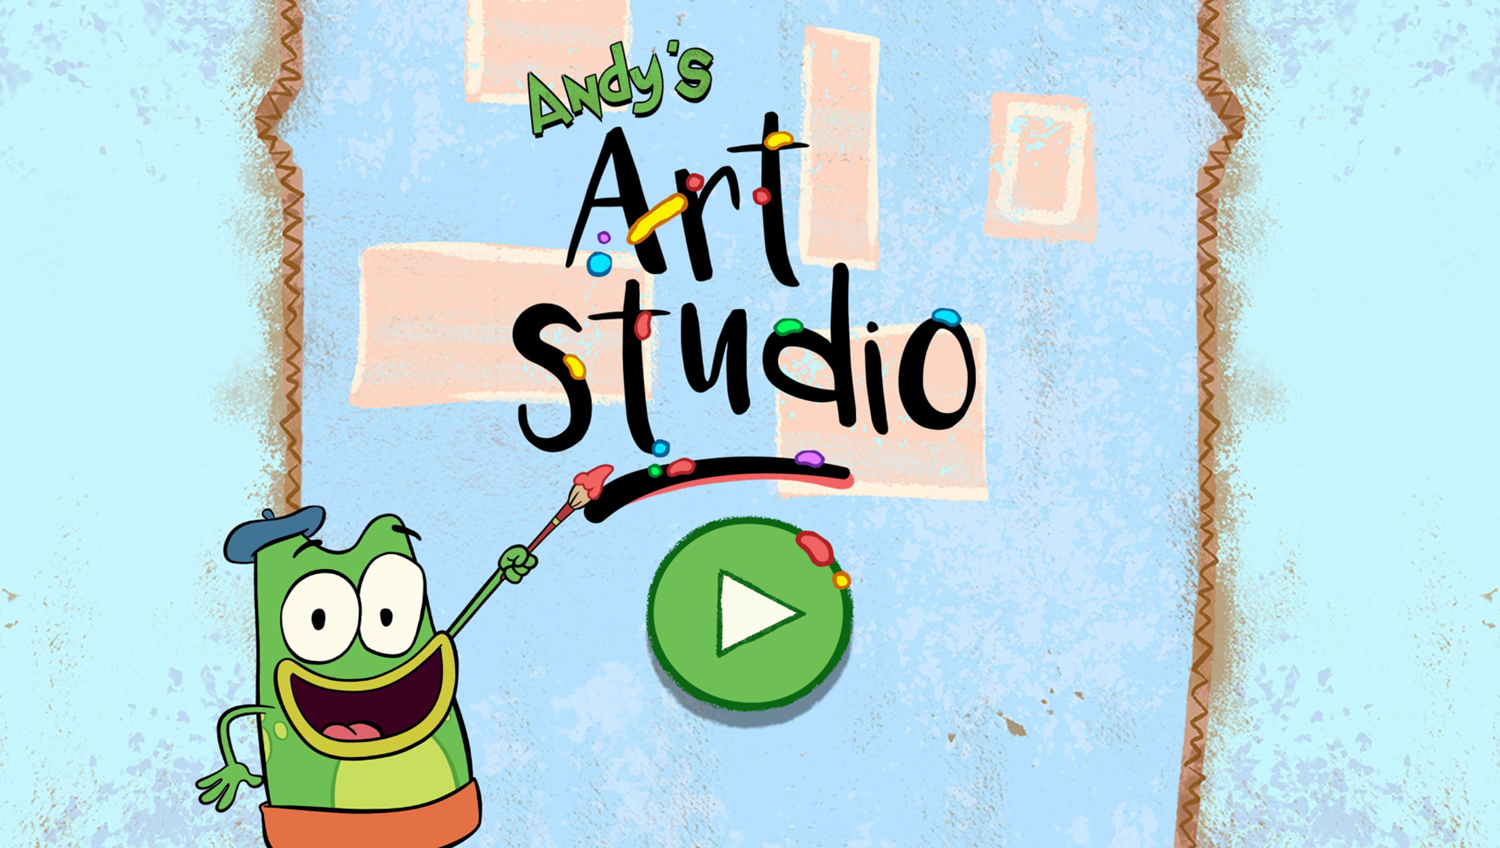 Let's Go Luna Andy's Art Studio Welcome Screen Screenshot.